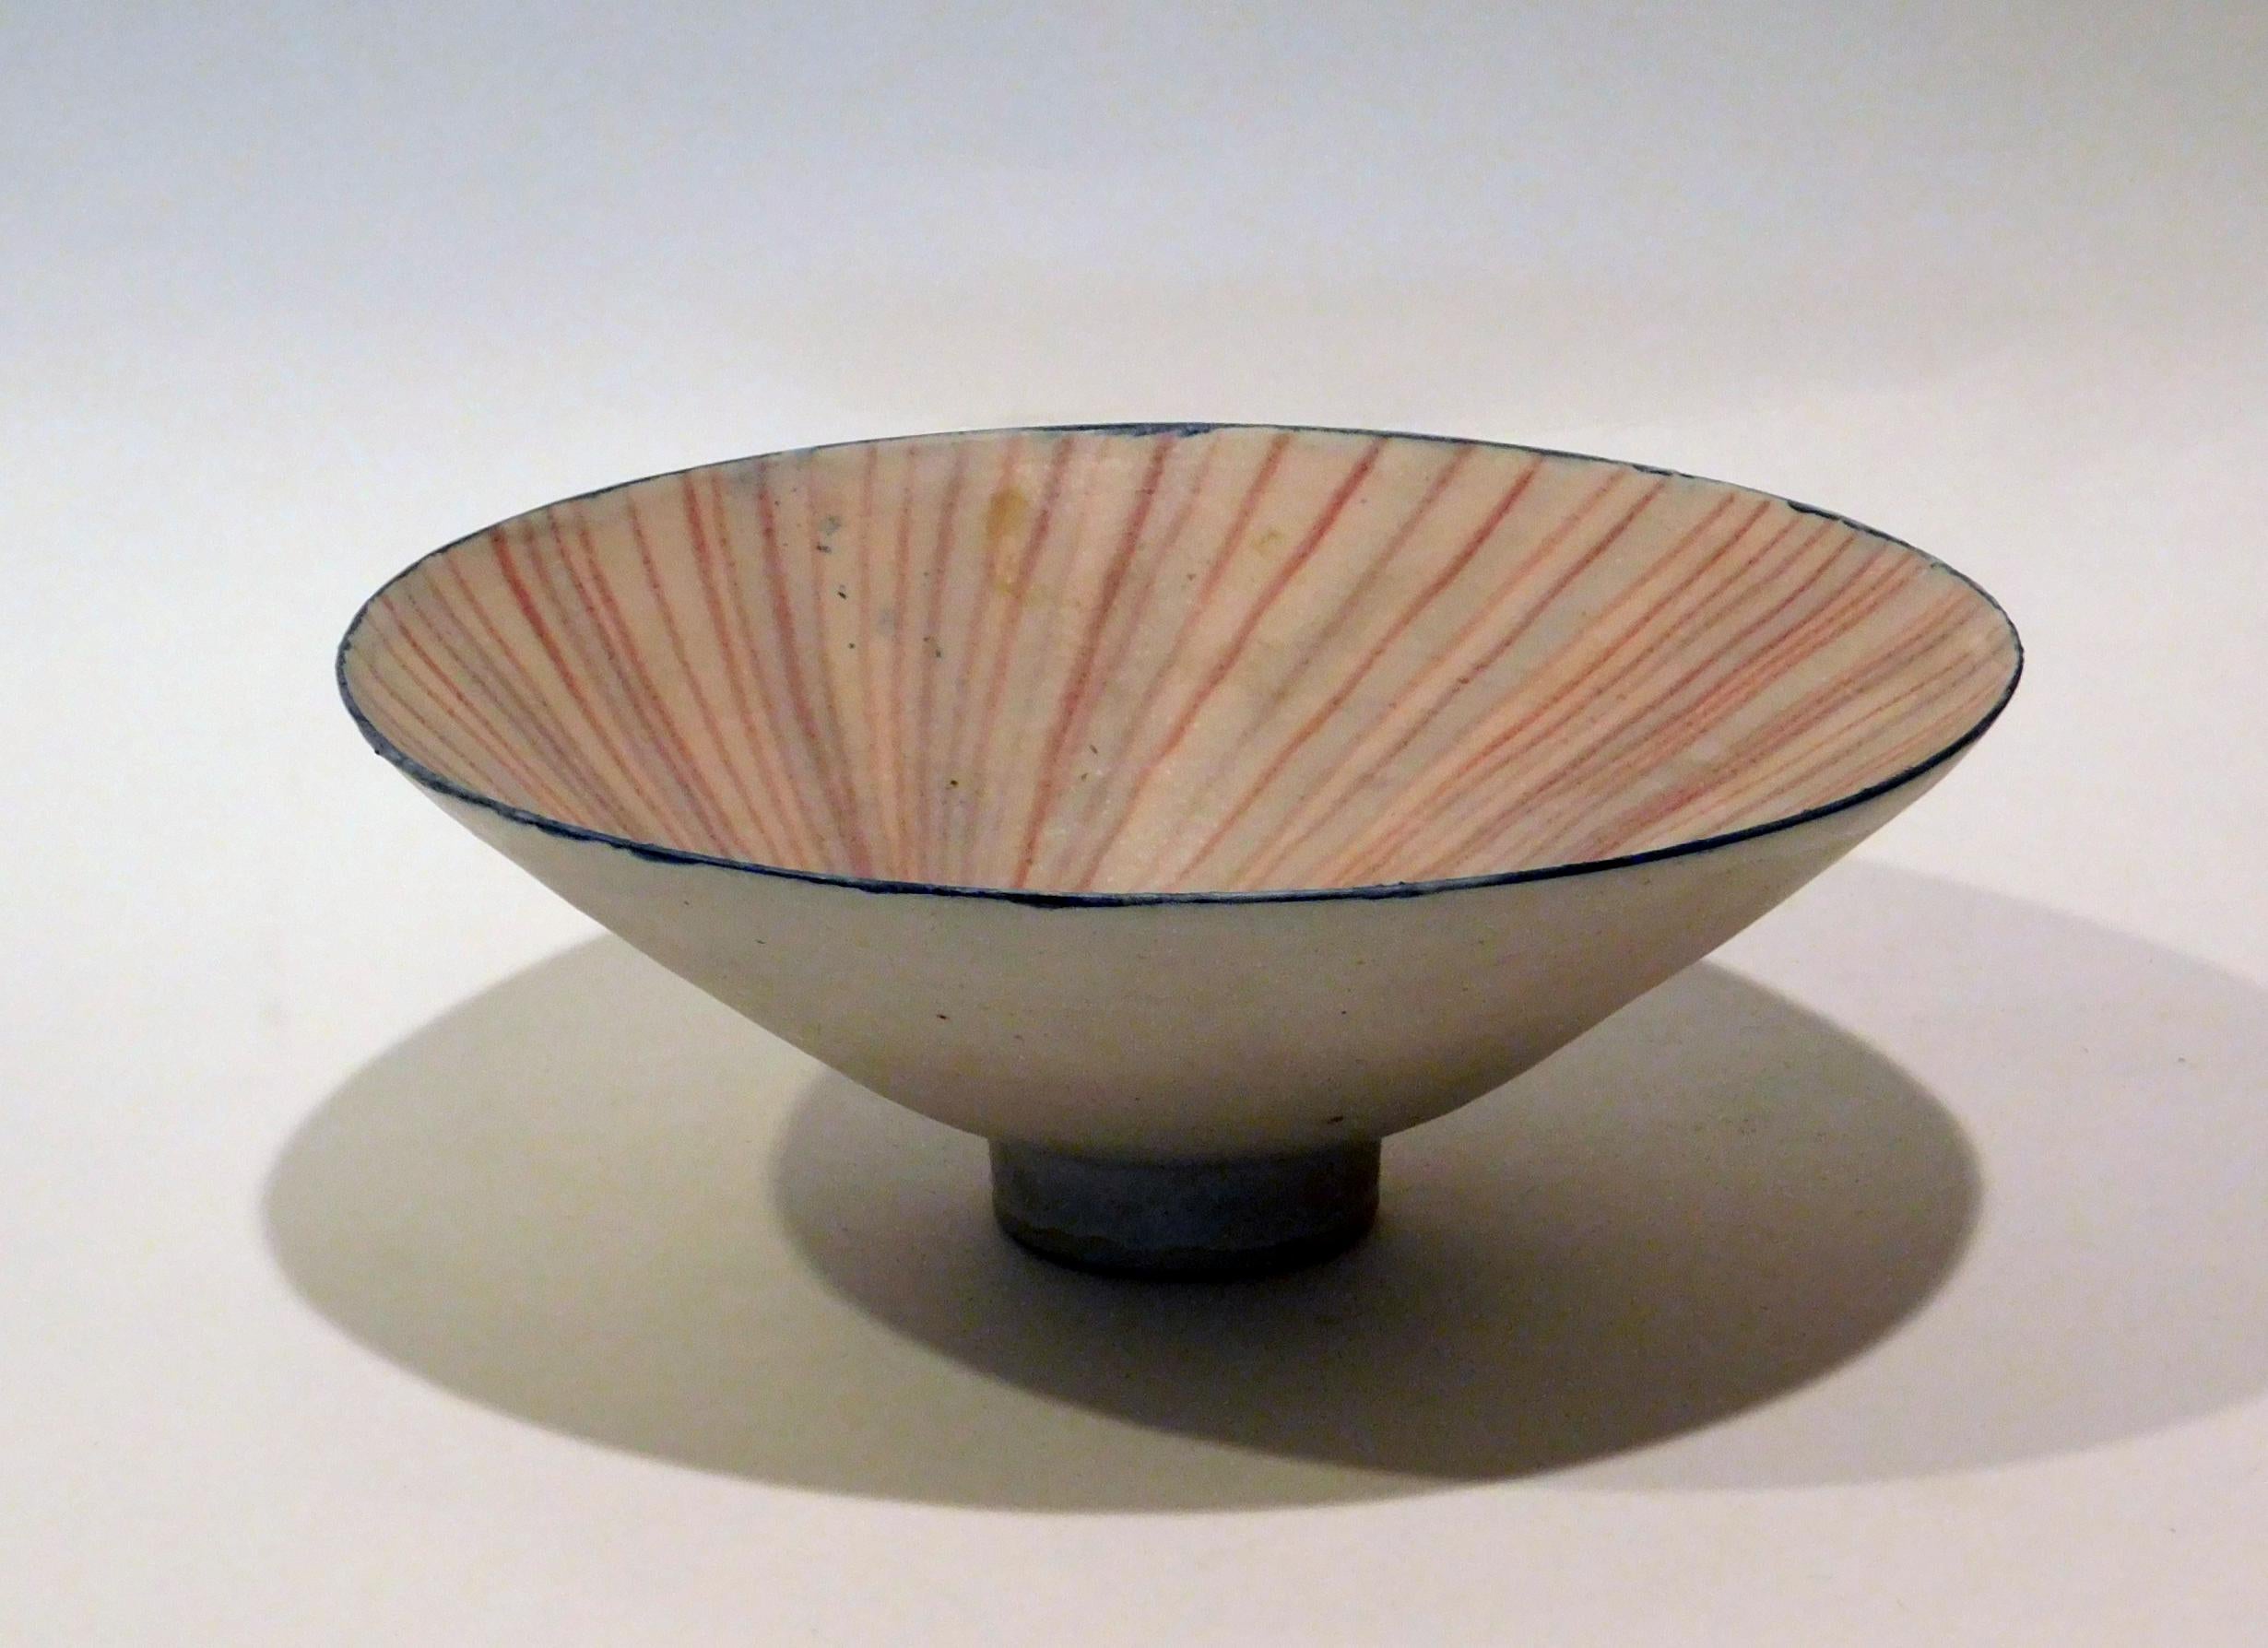  Emmanuel Cooper Important British Ceramist Flared Footed Studio Bowl For Sale 2